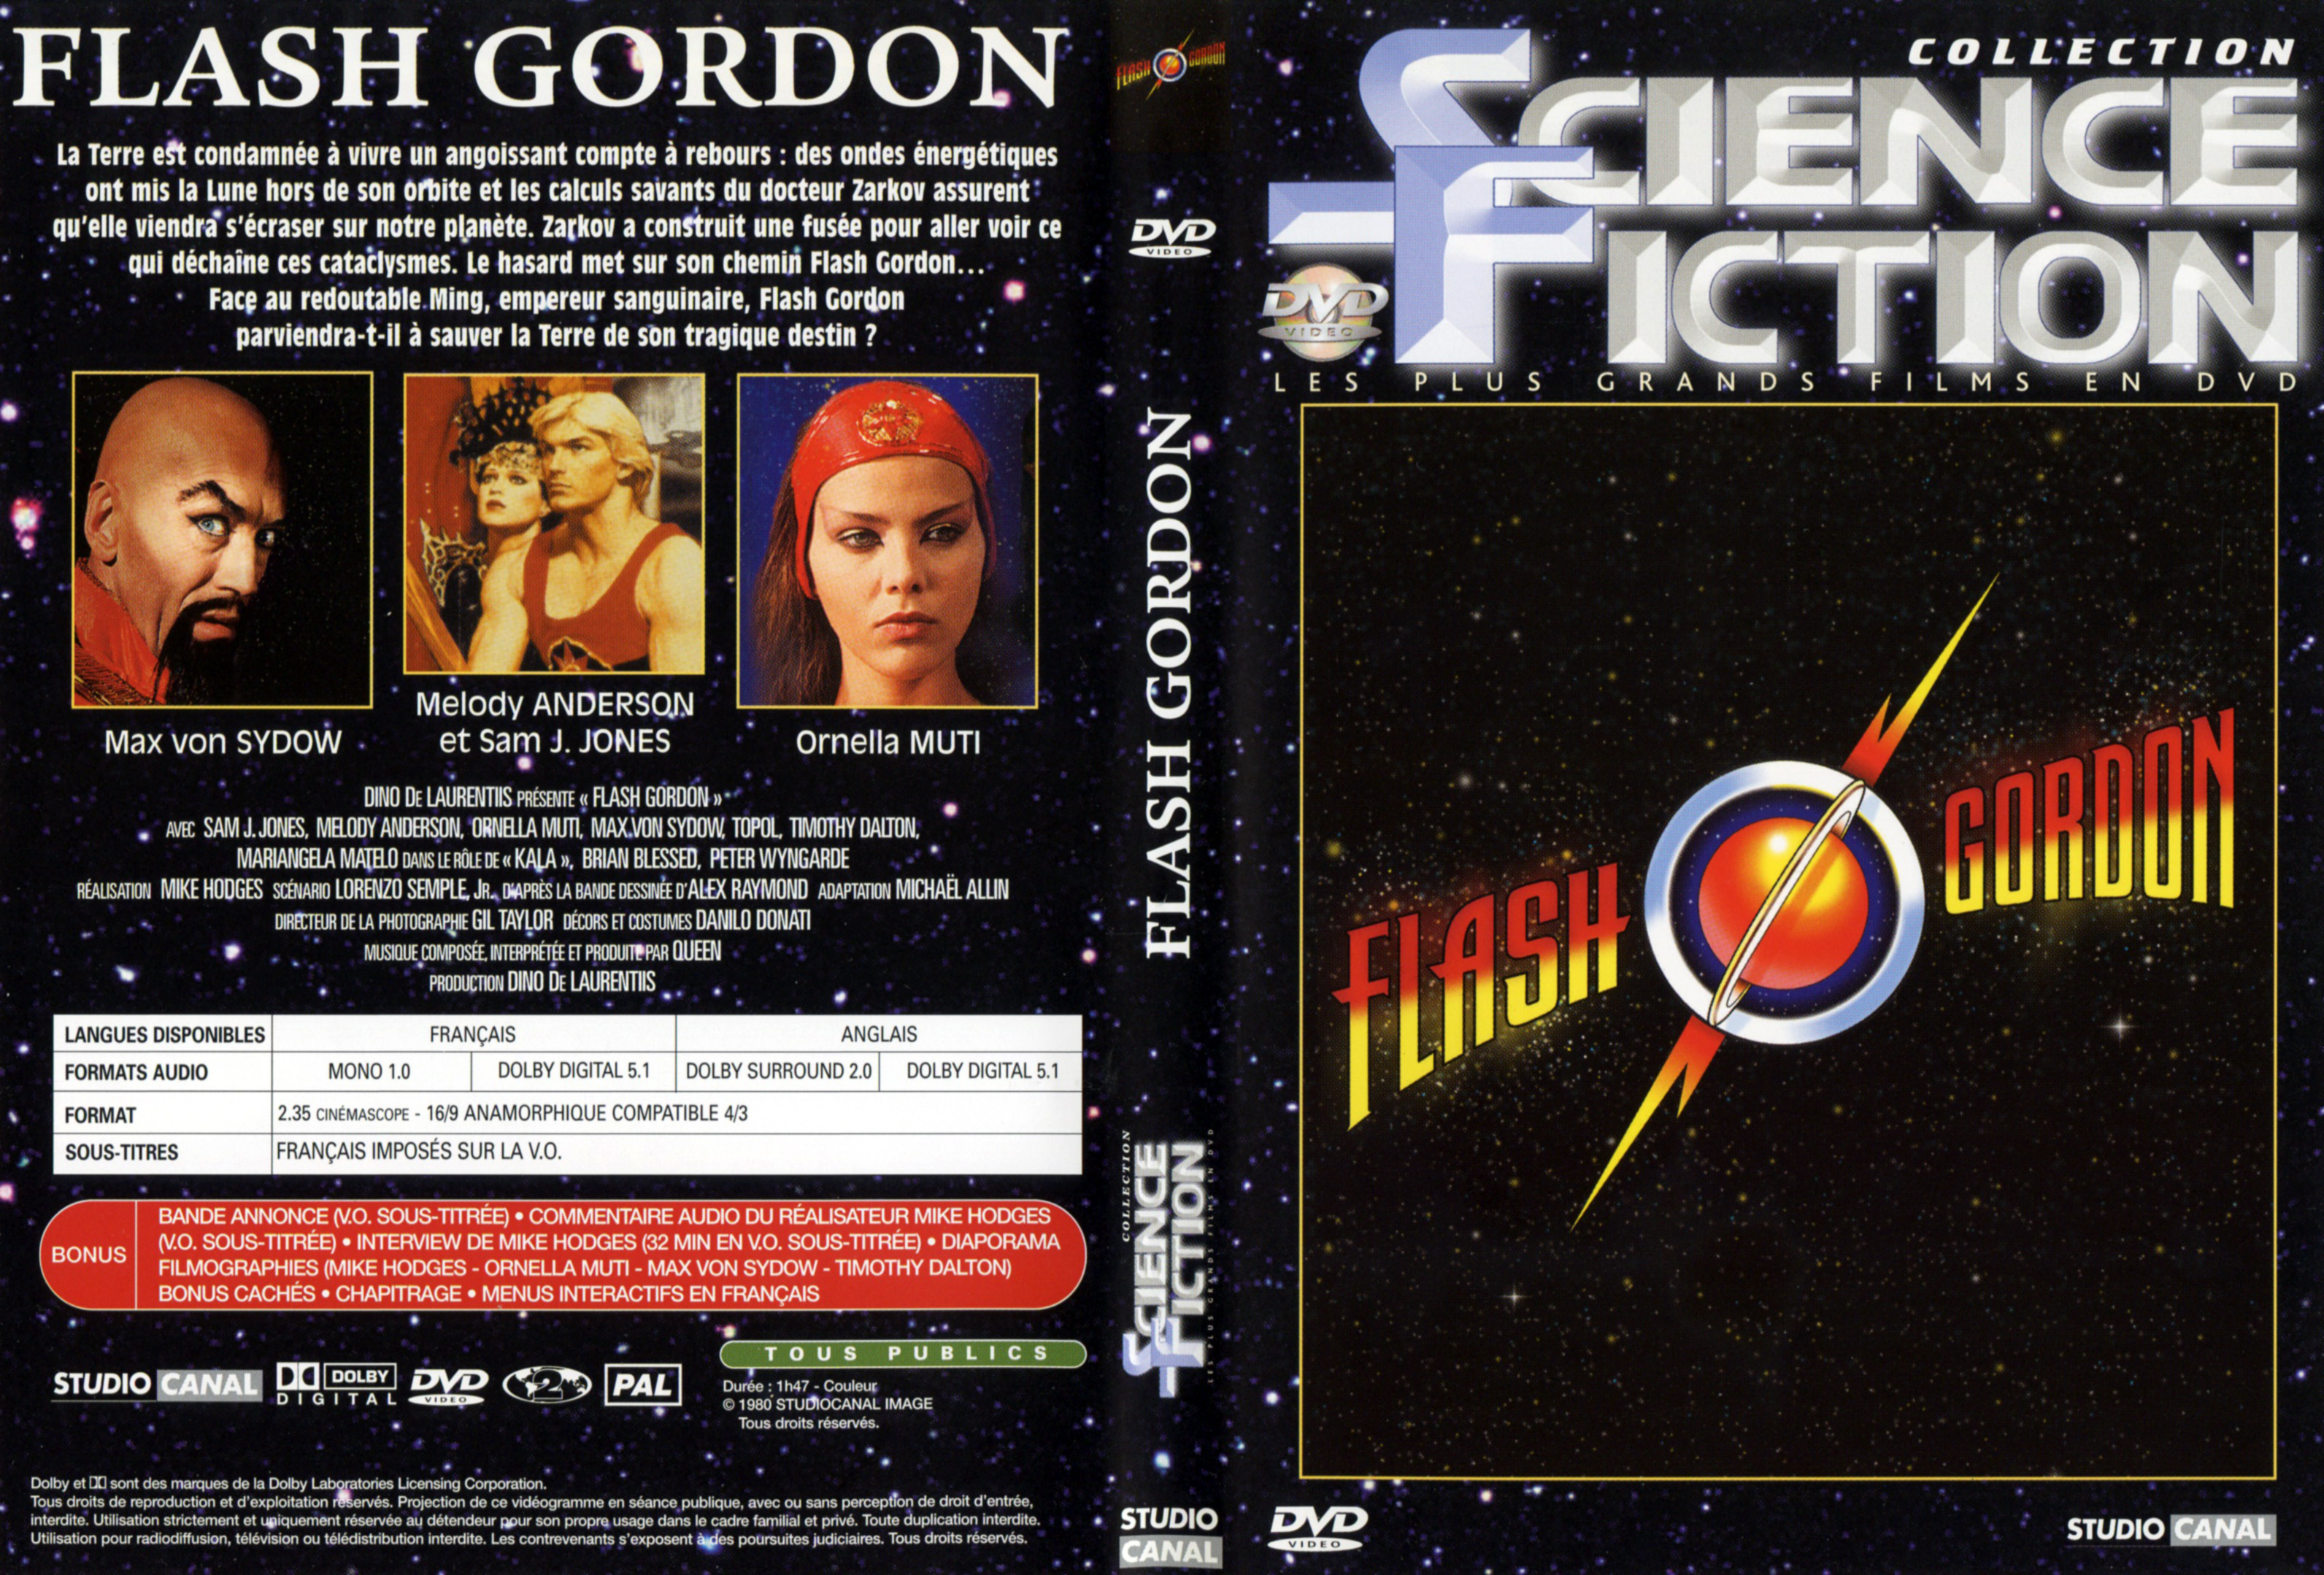 Jaquette DVD Flash Gordon v2